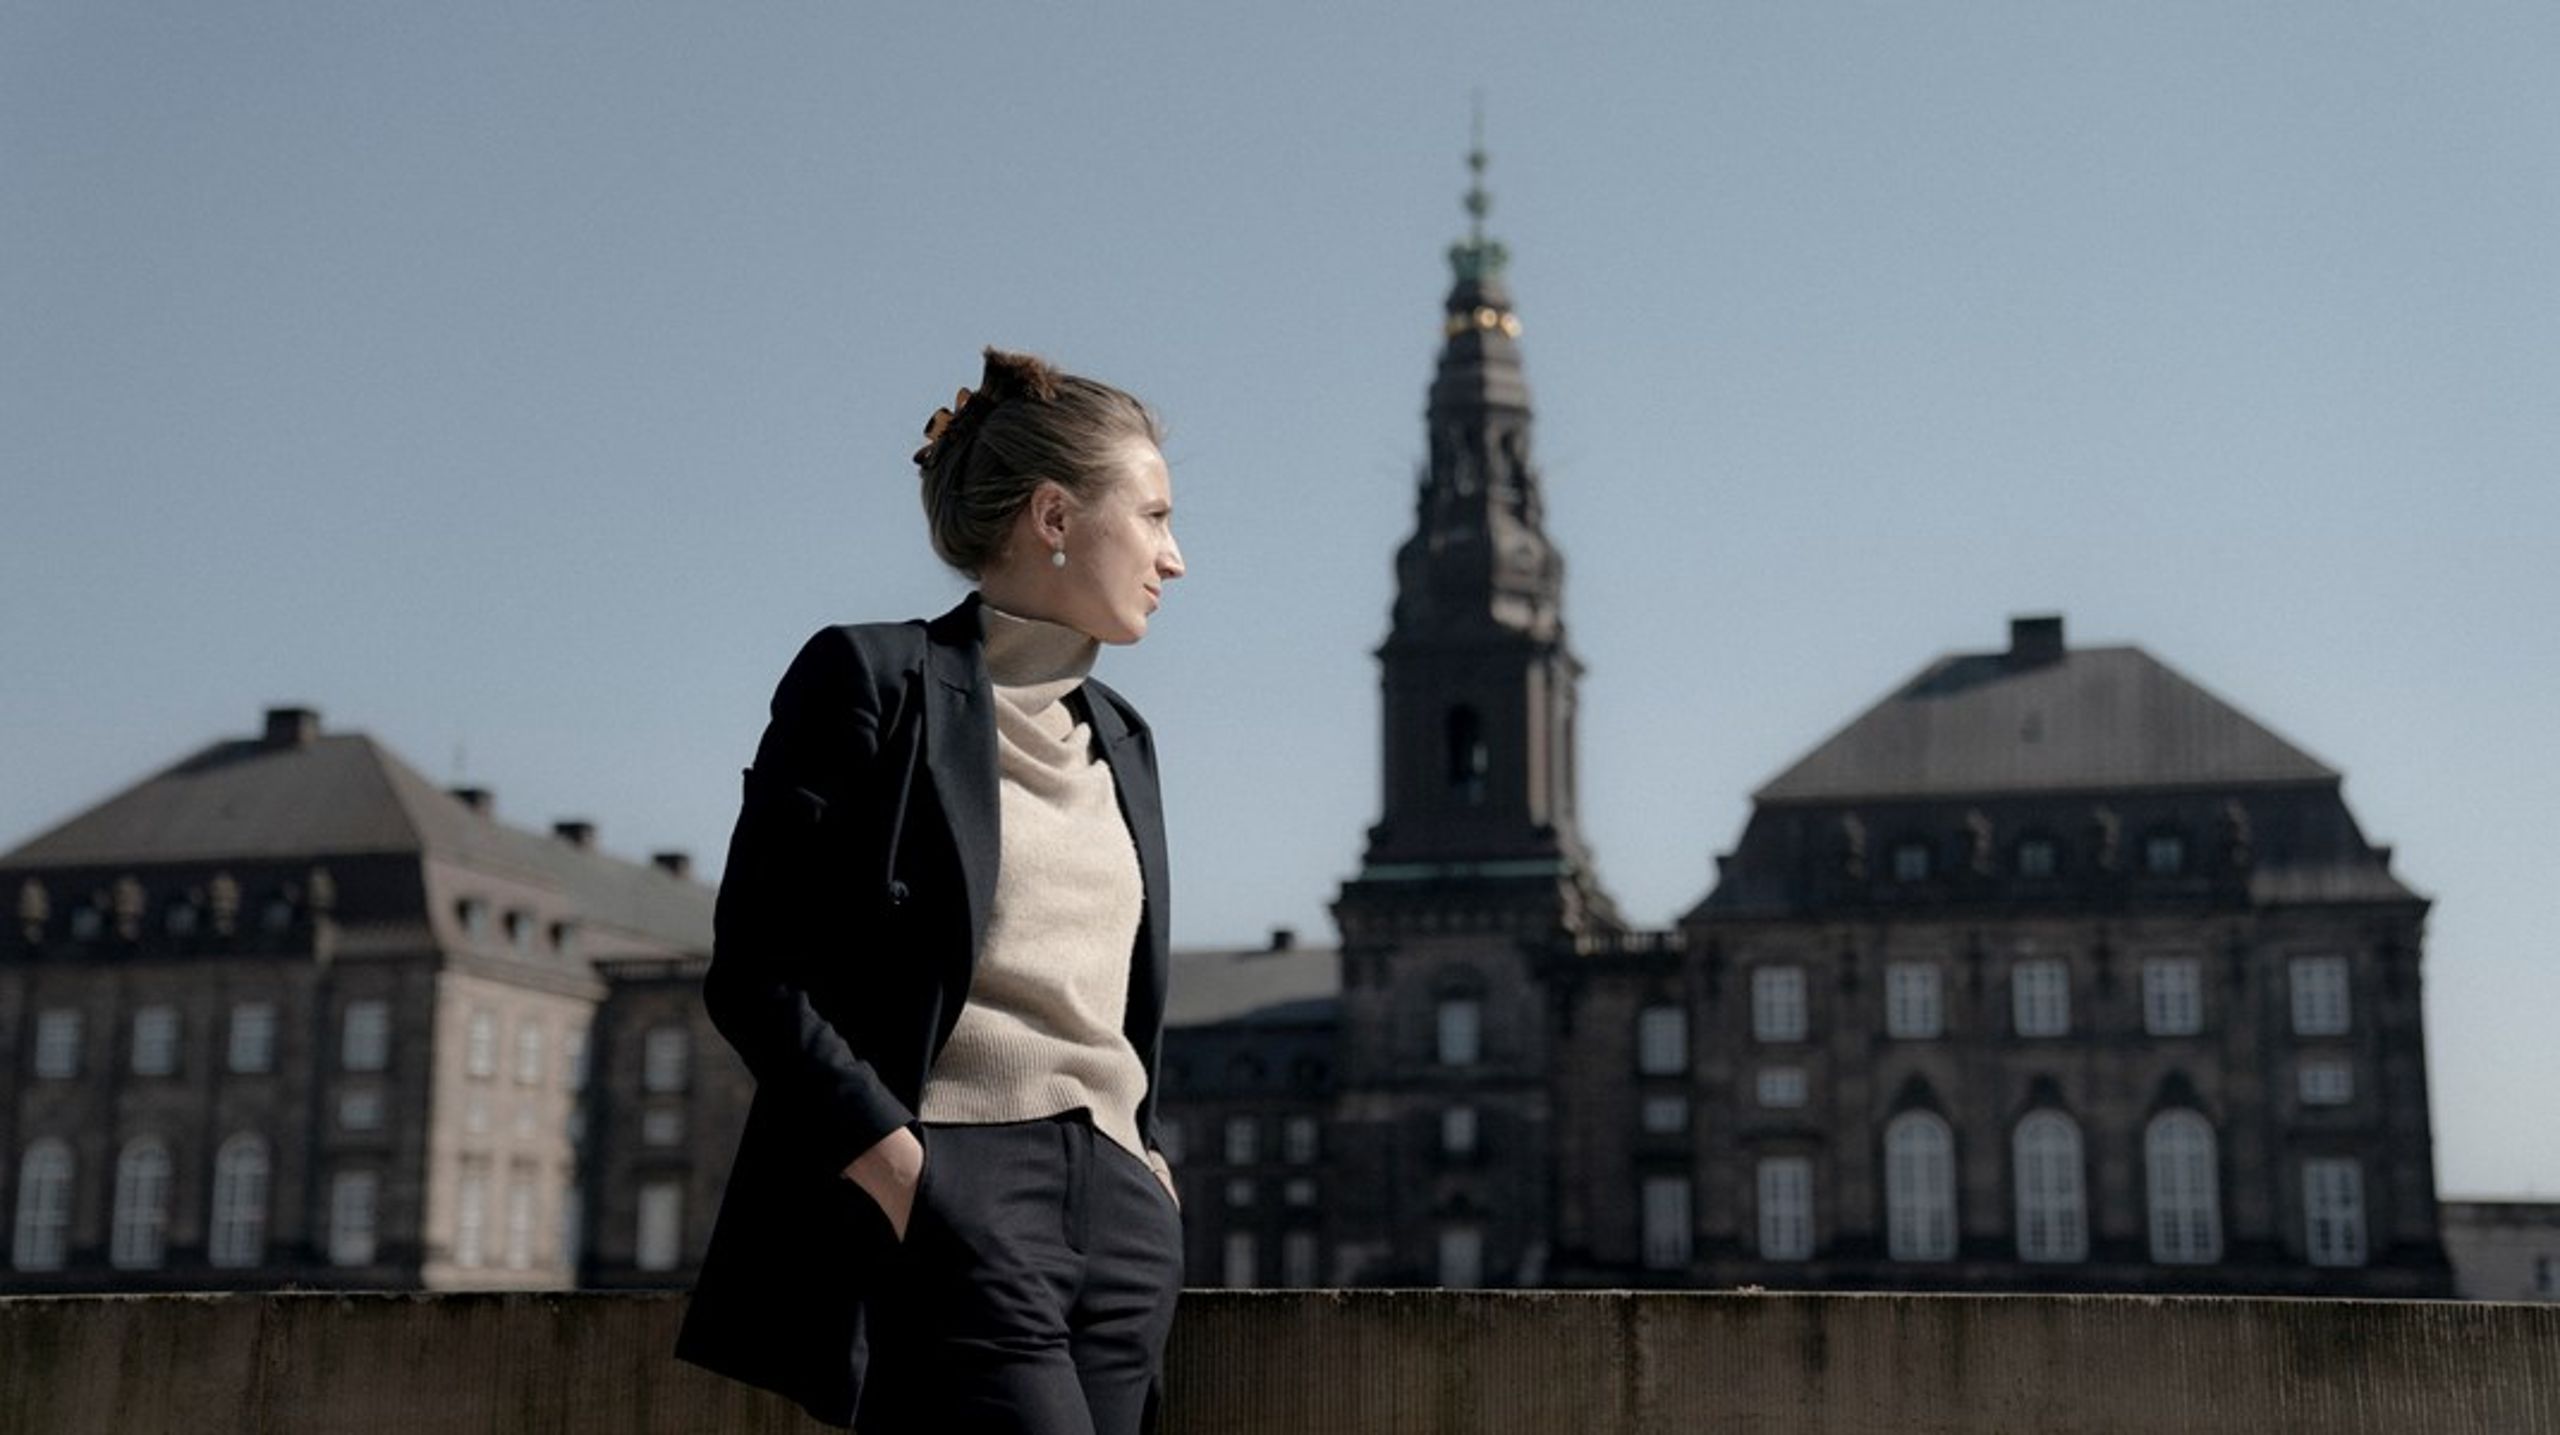 Theresa Scavenius er en grøn mediedarling og en populær debattør, men hun står nu mutters alene på Christiansborg, forvist til et kontor langt fra både indflydelse og dem, der er hende politisk nærmest, skriver Morten Reimar.